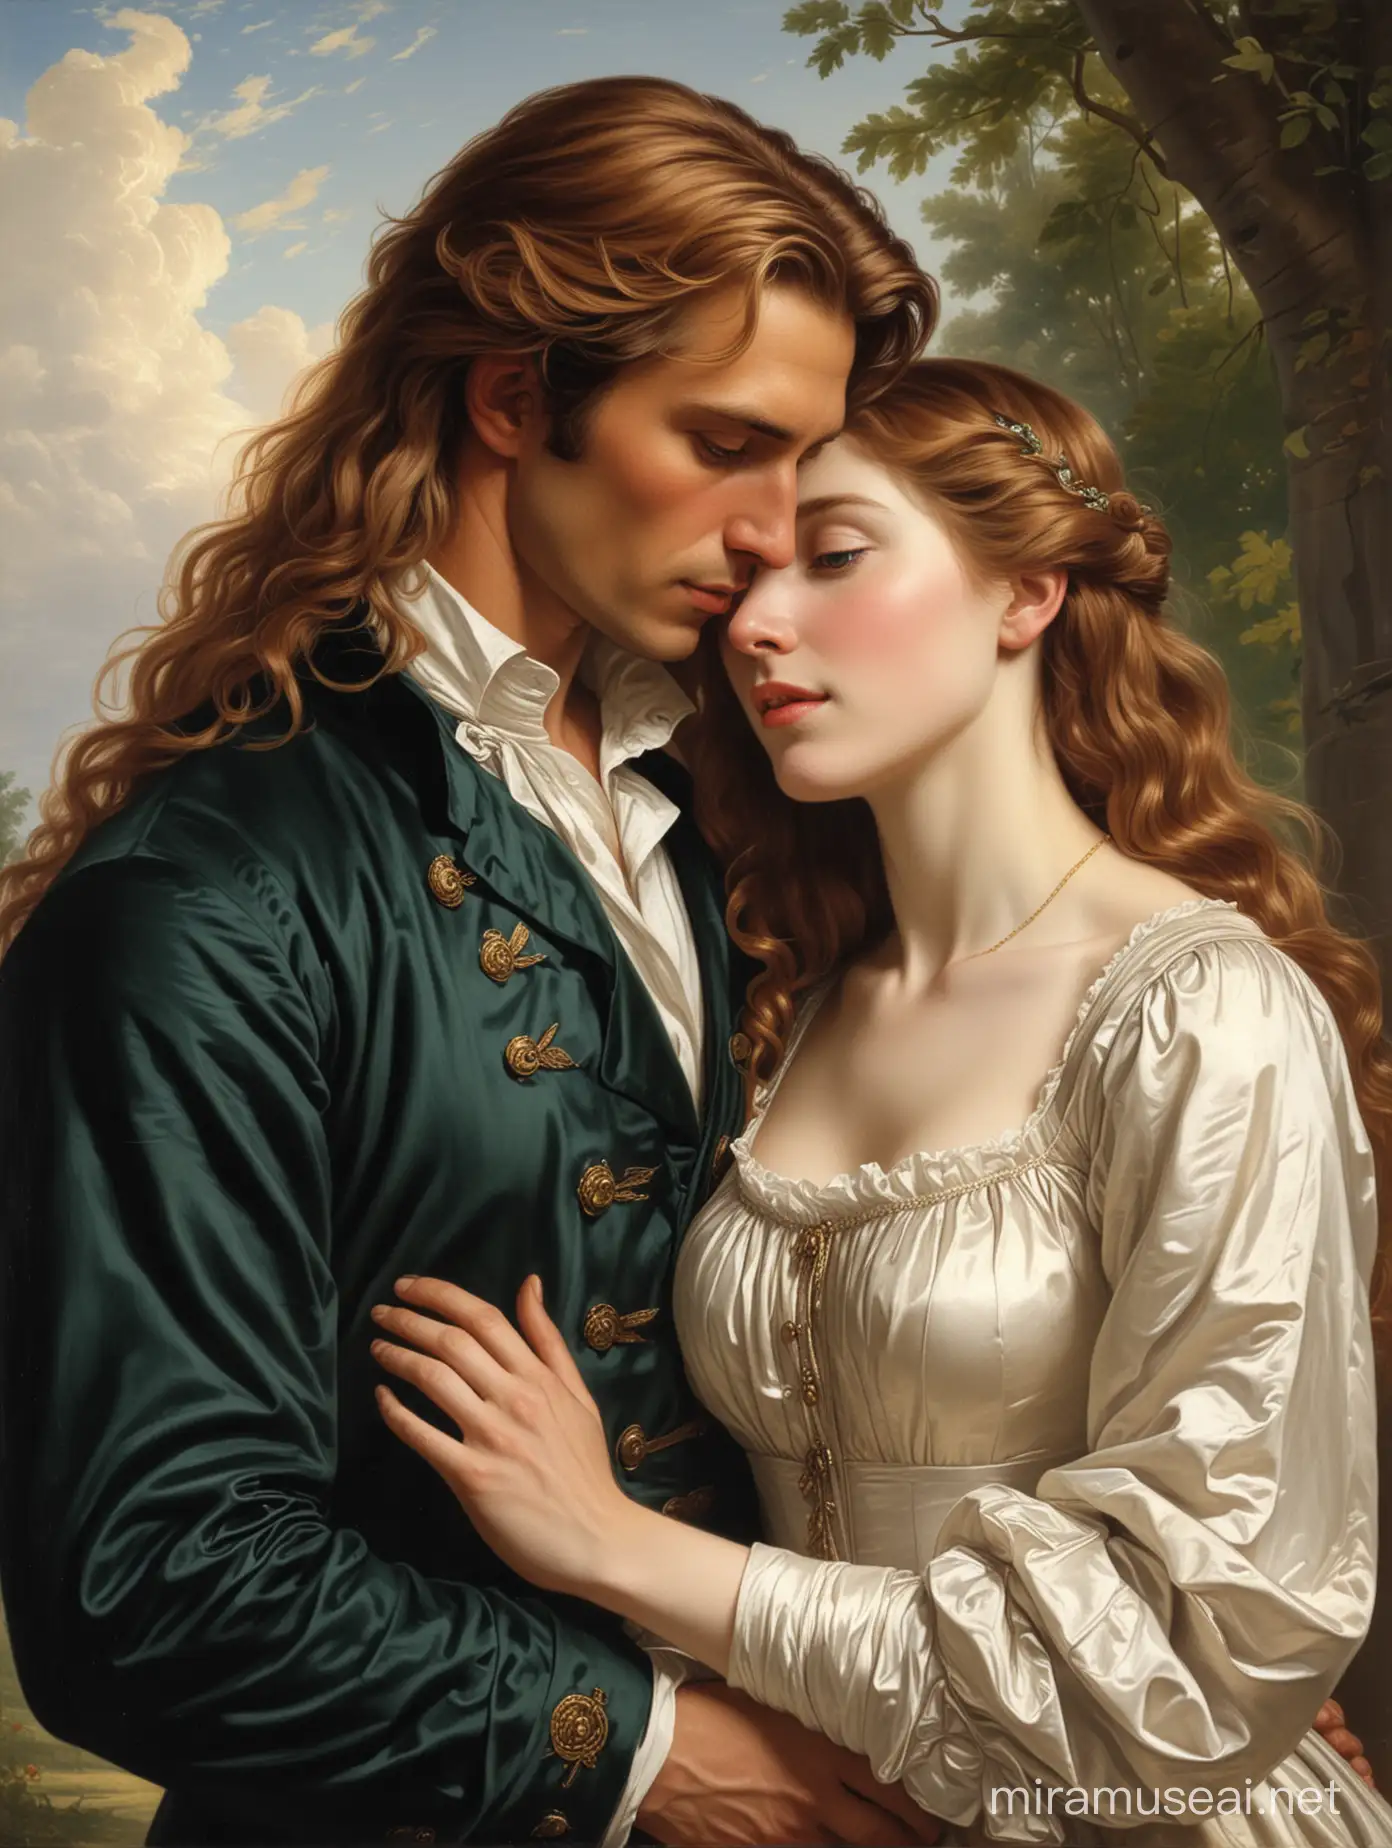 

hombre noble de cabello largo y castaño, tez blanca; junto a una hermosa mujer abrazados. De 1840